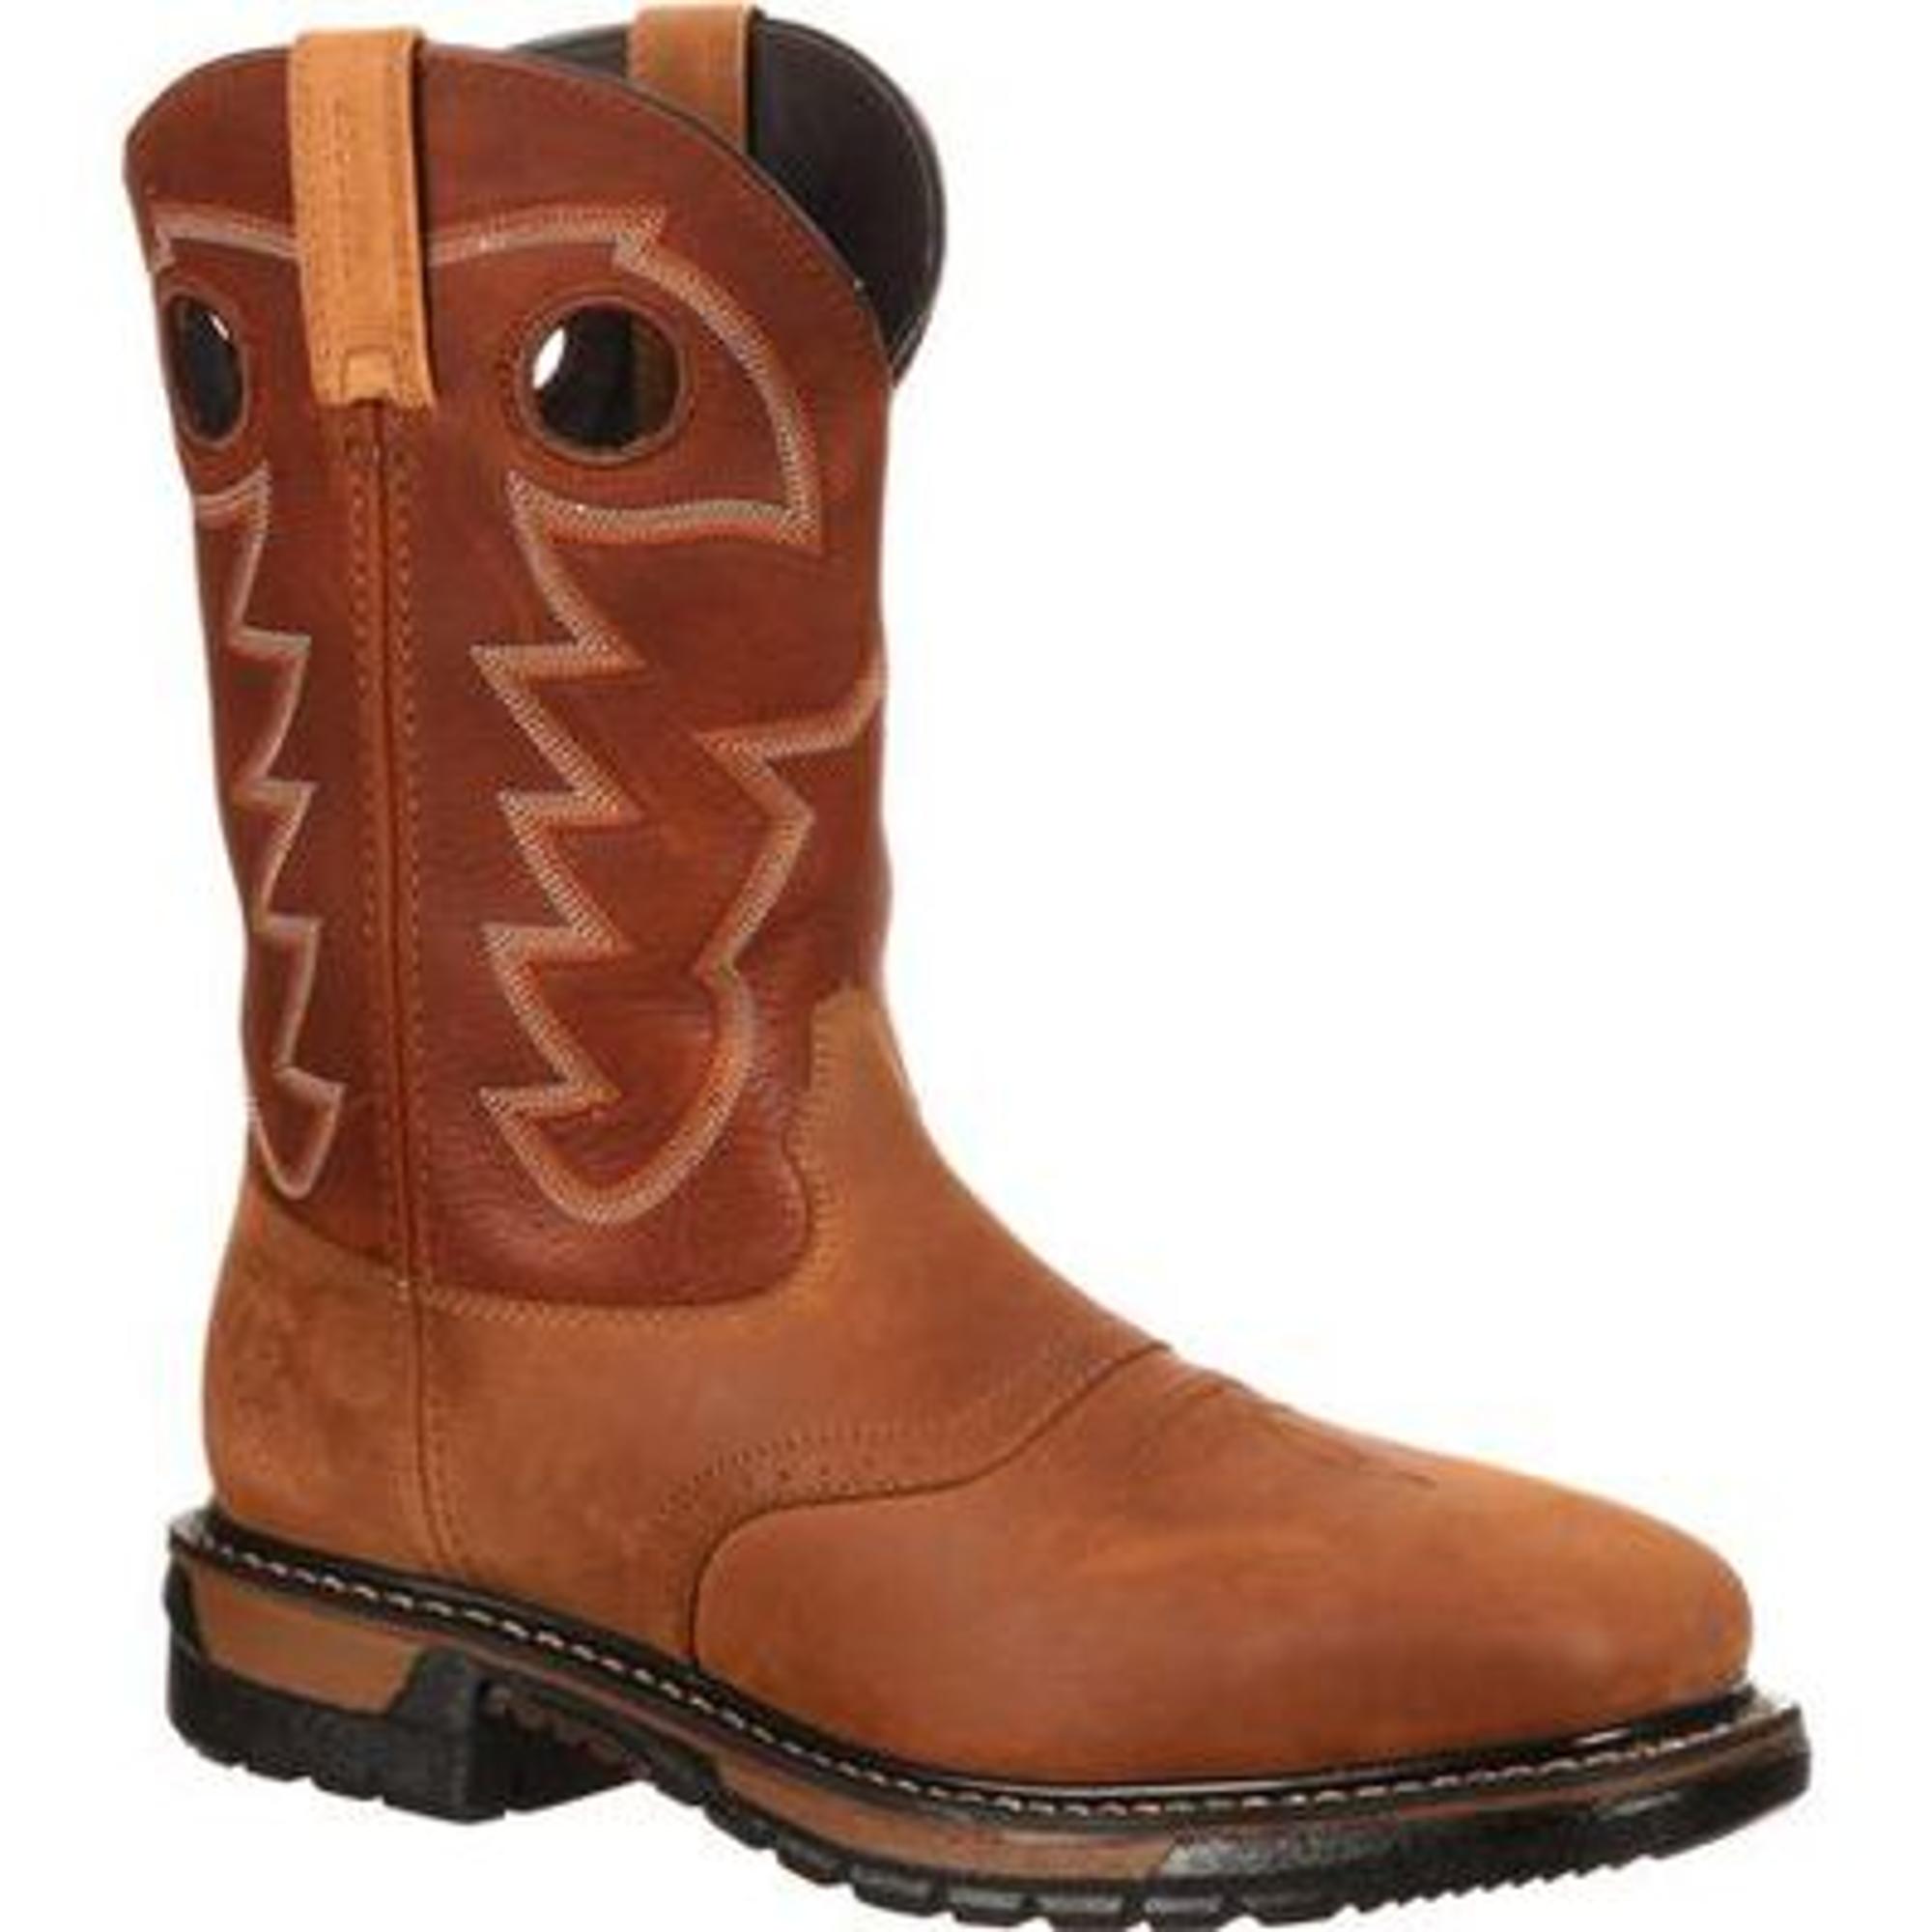 Rocky Original Ride Steel Toe Waterproof Western Boots